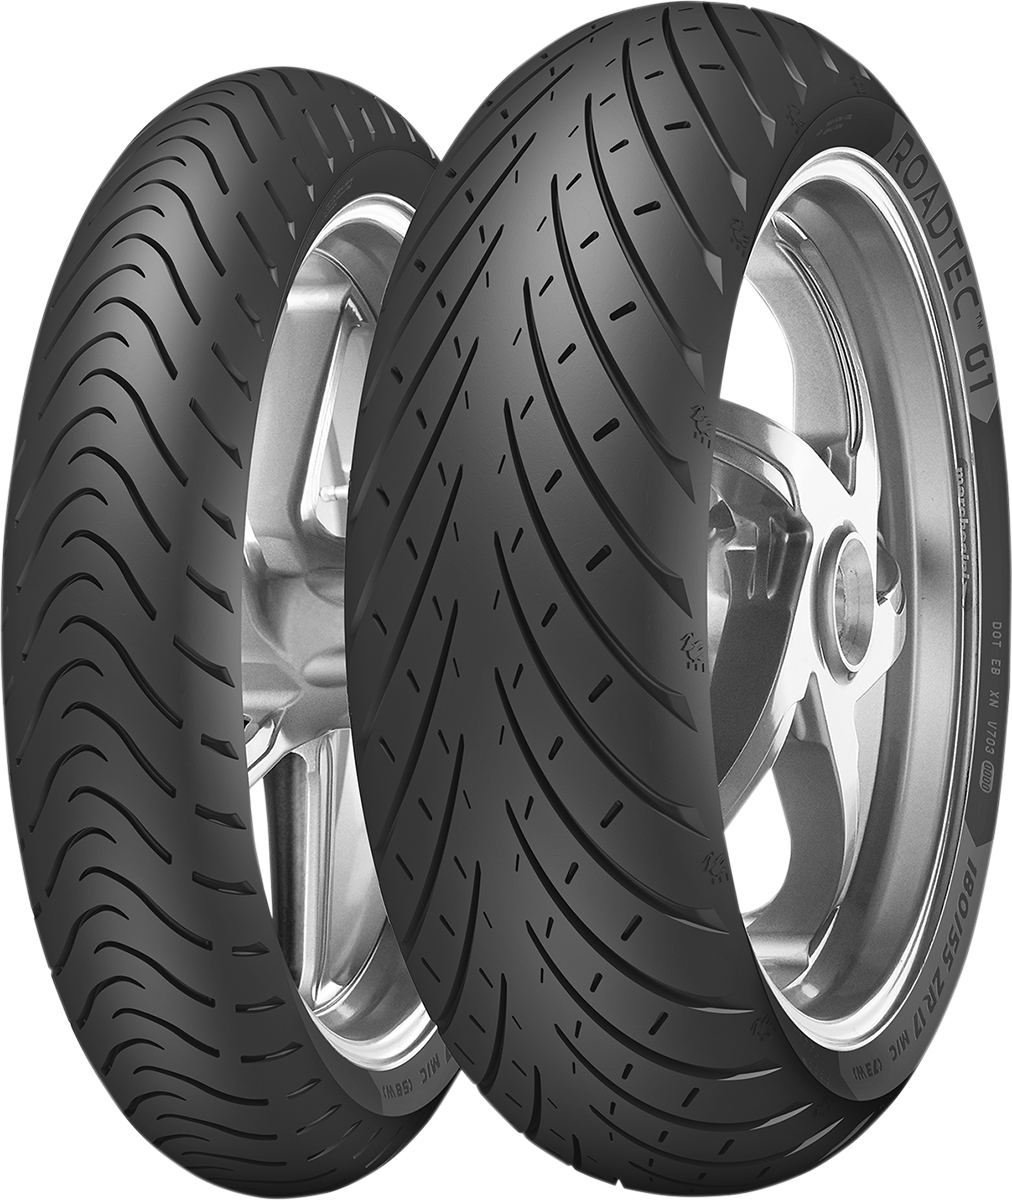 METZELER Tire - Roadtec* 01 - Front - 130/90-16 - 67H 3555200